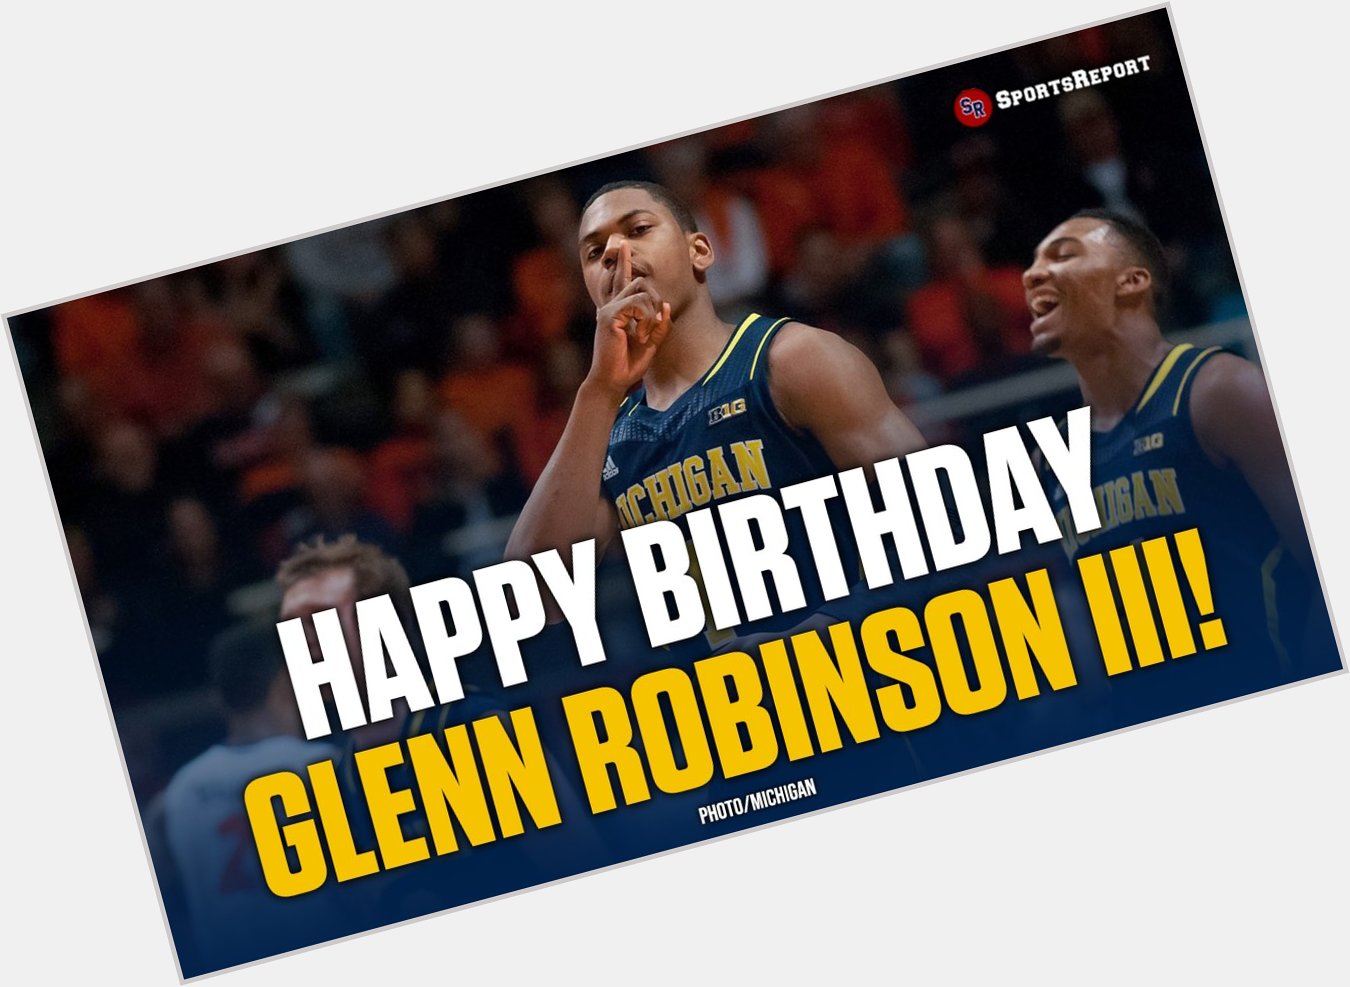  Fans, let\s wish Glenn Robinson III a Happy Birthday! 